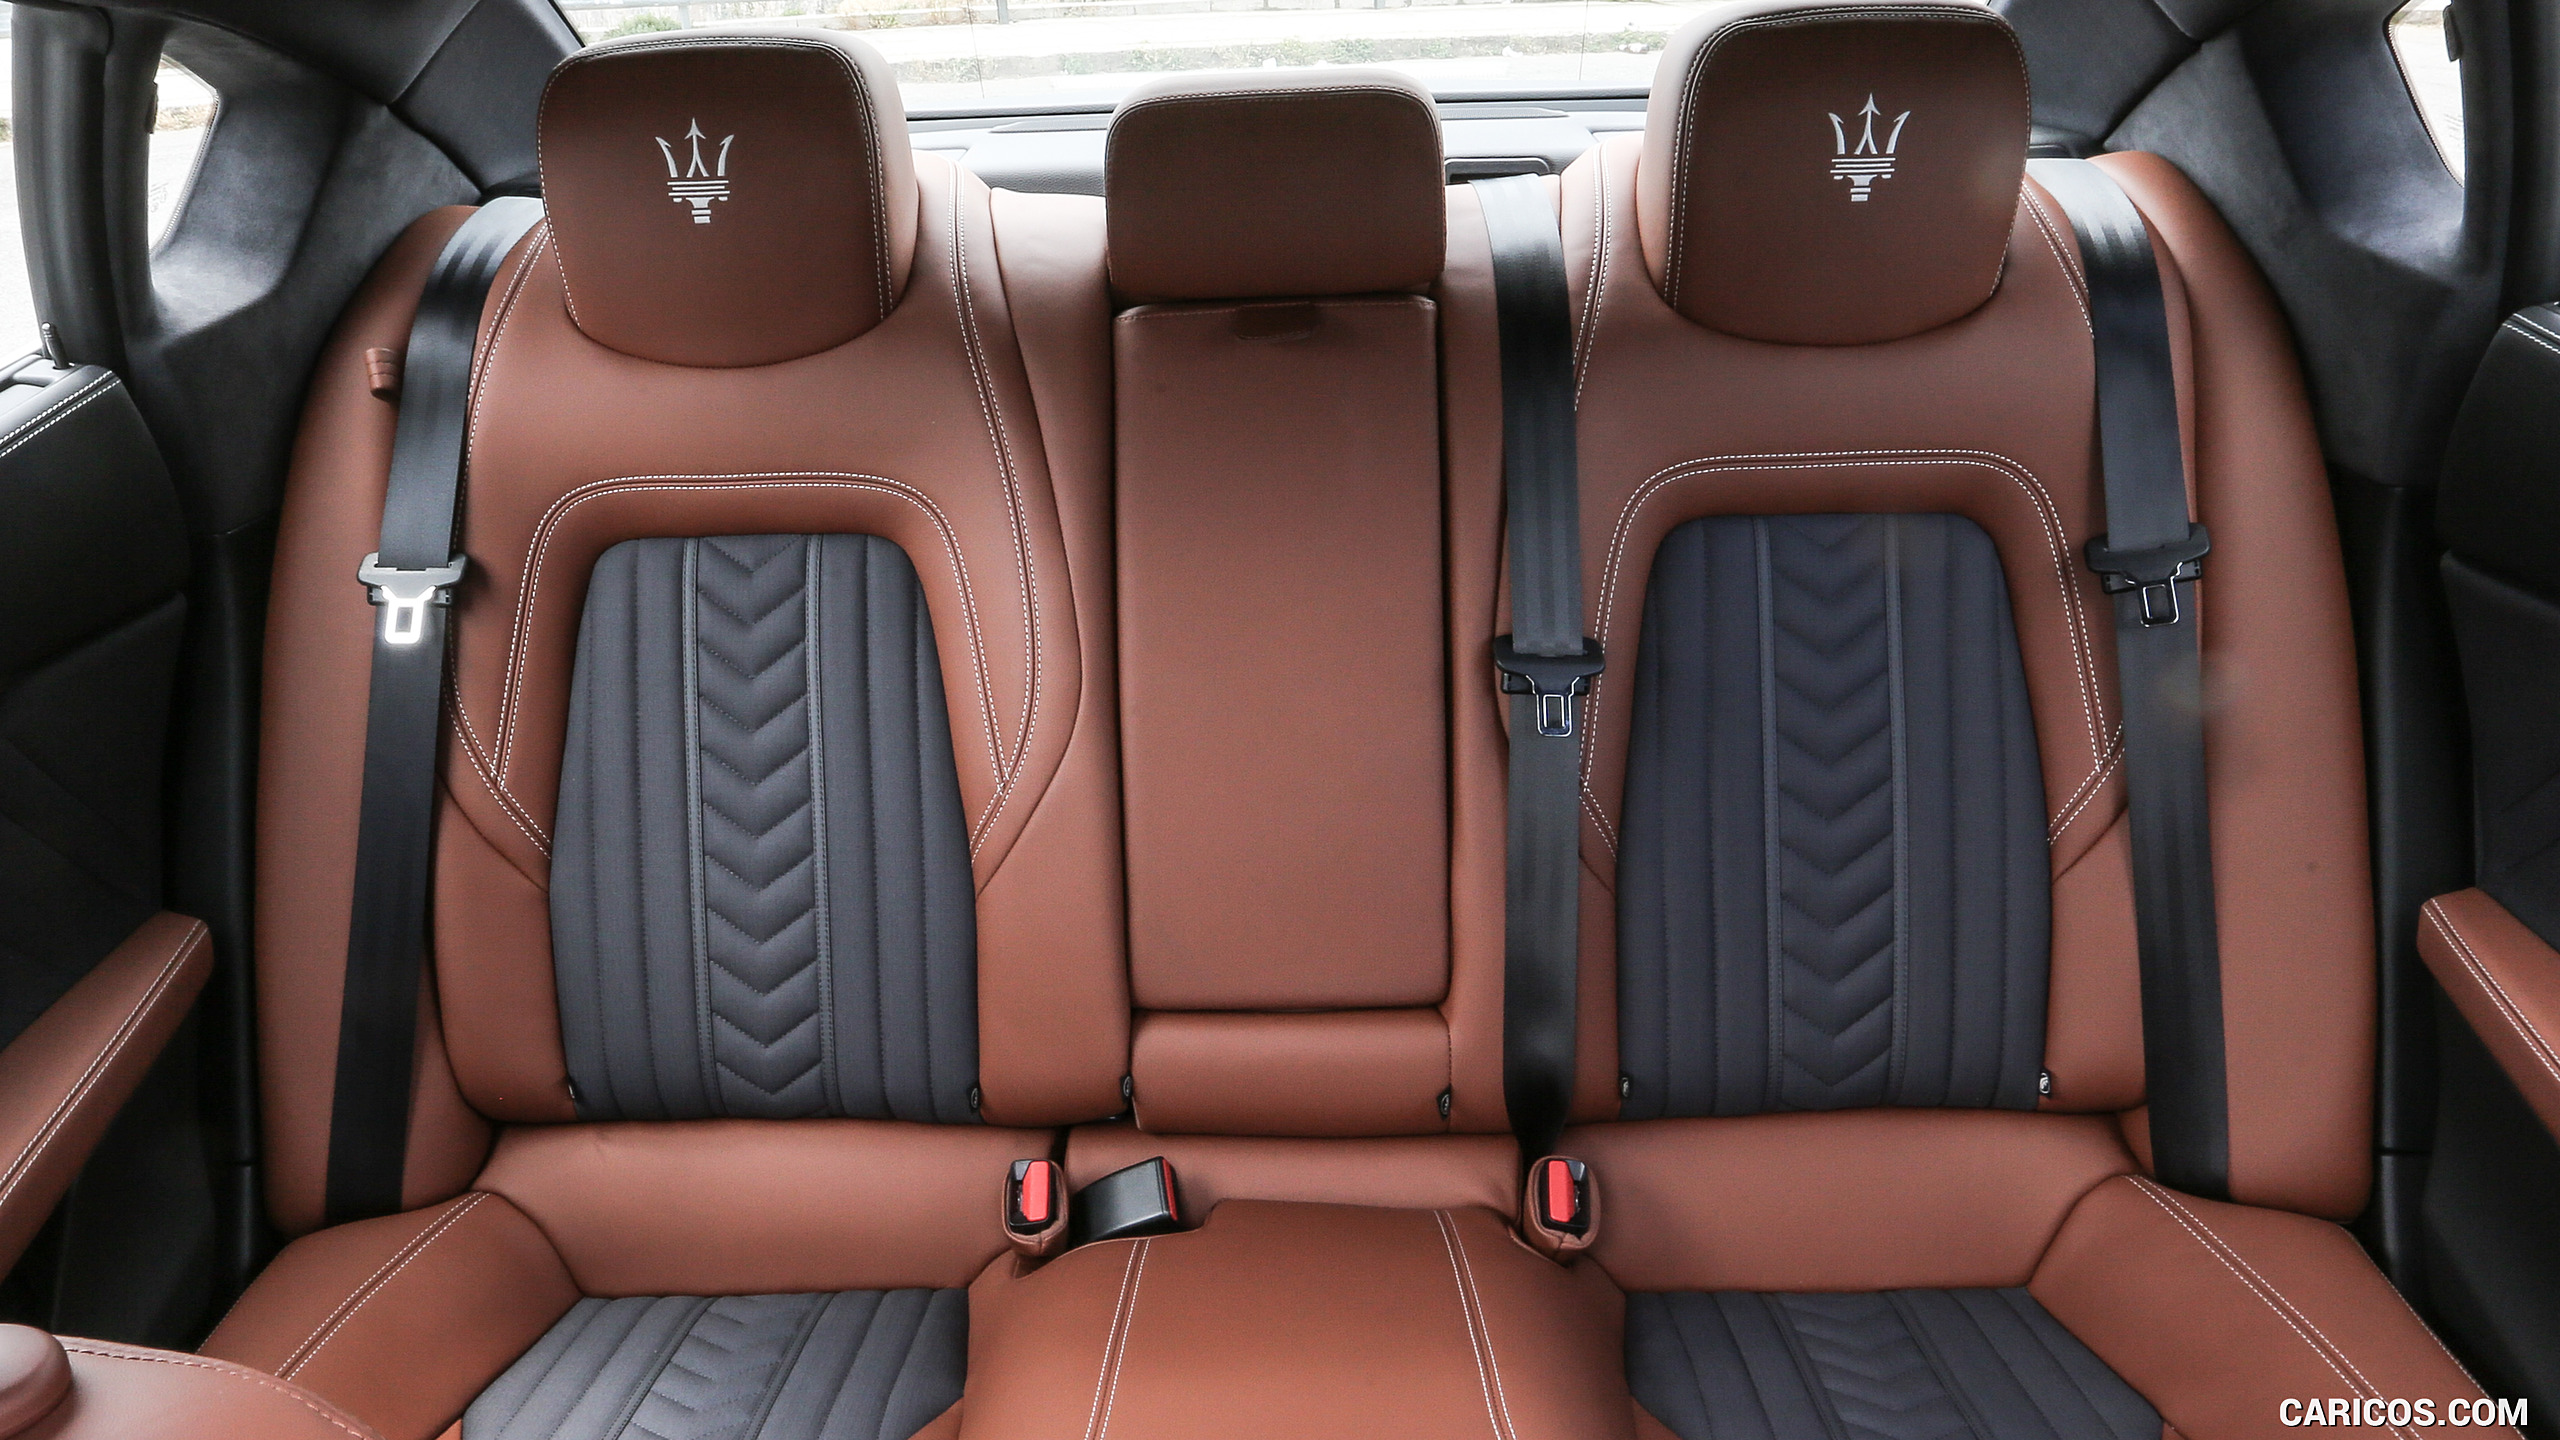 2017 Maserati Quattroporte GTS GranLusso - Interior, Rear Seats, #45 of 80